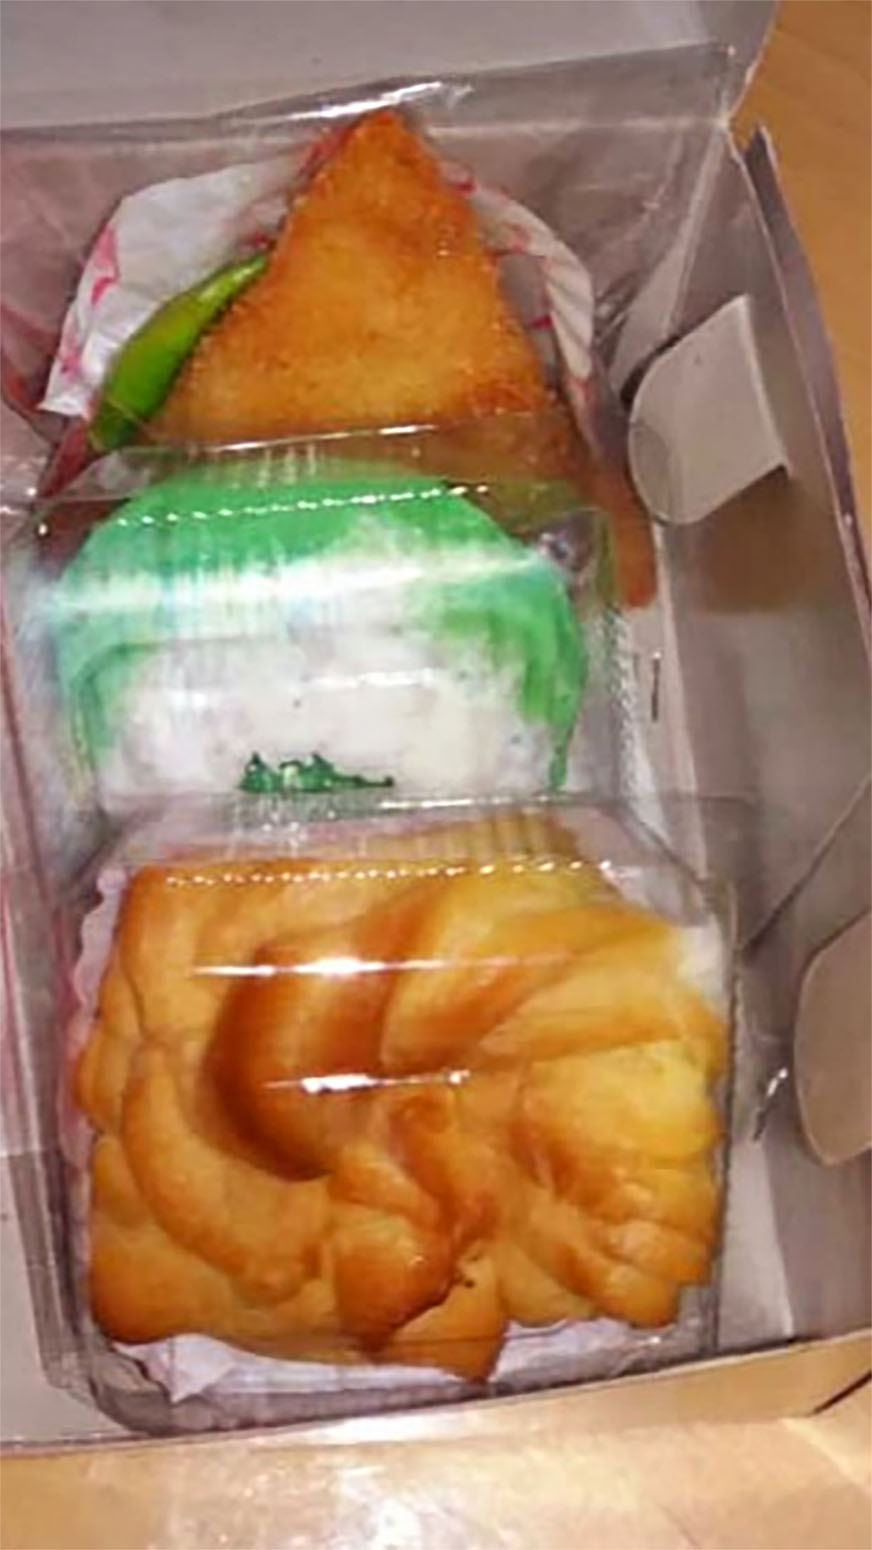 Kukerku Snack box paket murah